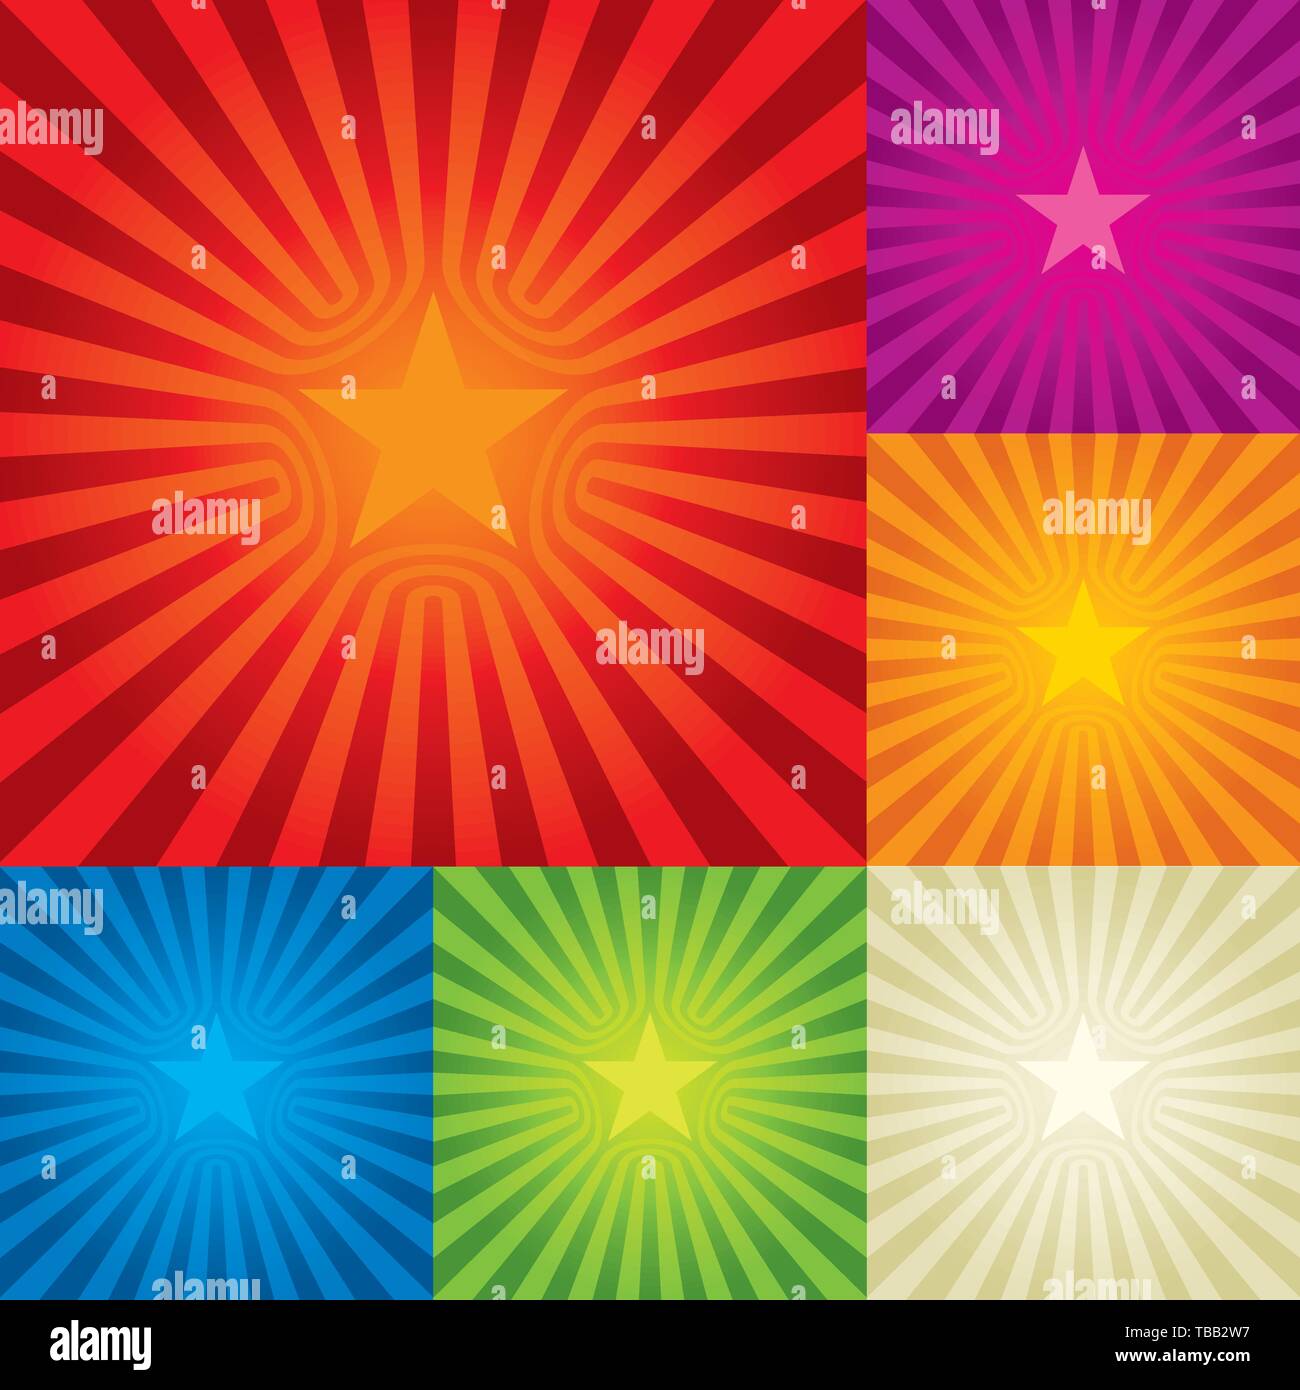 Illustrazione Vettoriale. Stella sullo sfondo di burst in sei colori. Composizione centrale. Illustrazione Vettoriale